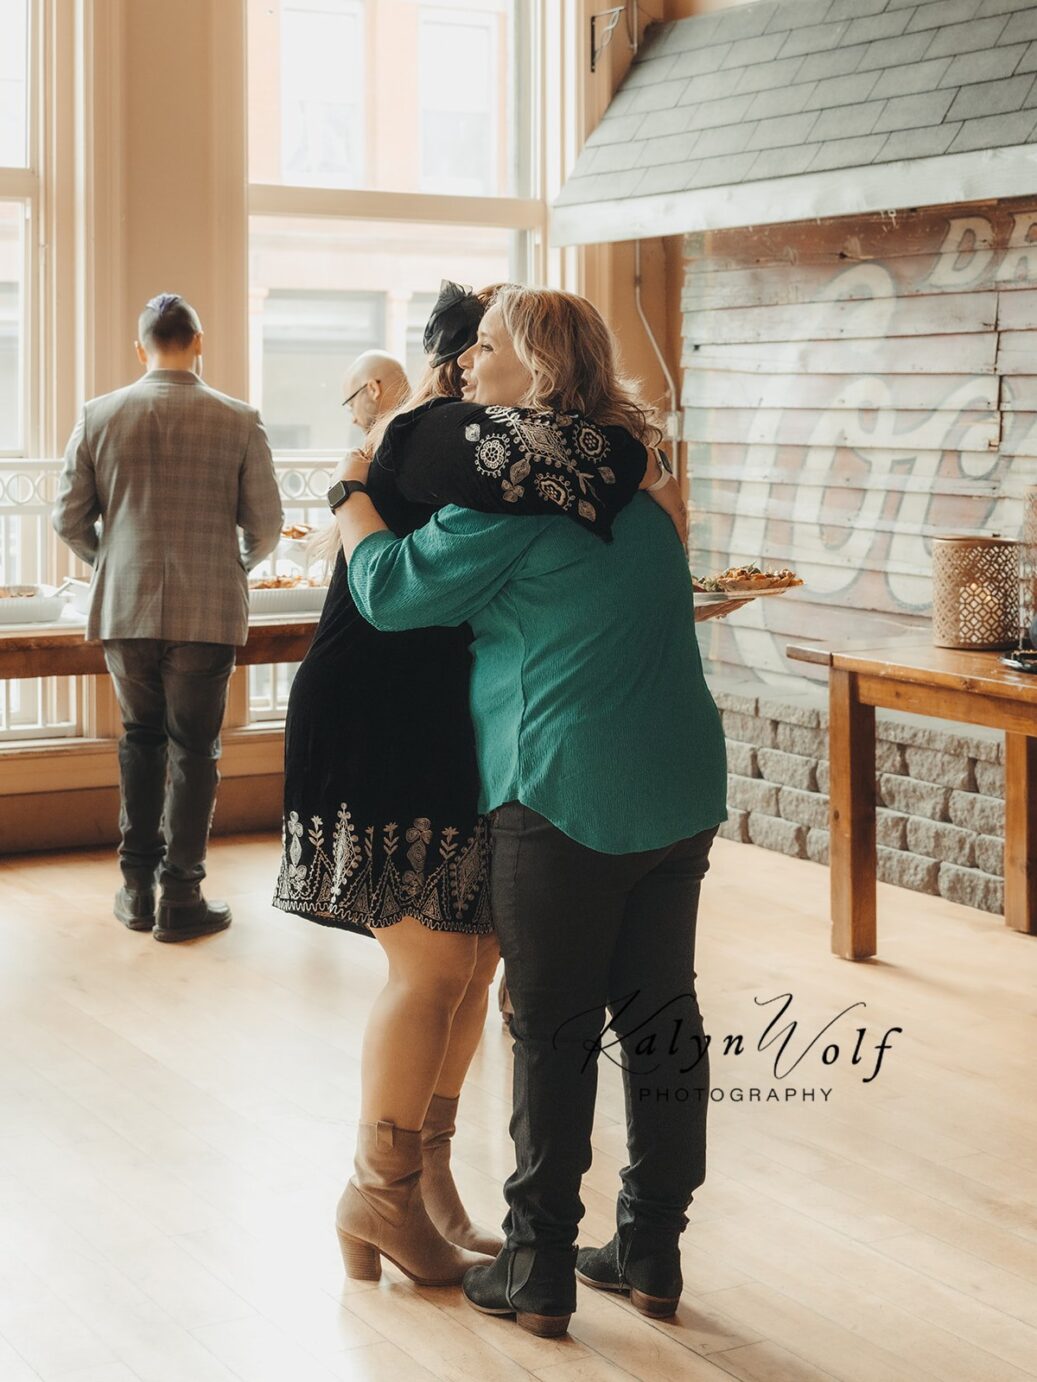 Michelle Tverberg gives a hug to a fellow wedding vendor